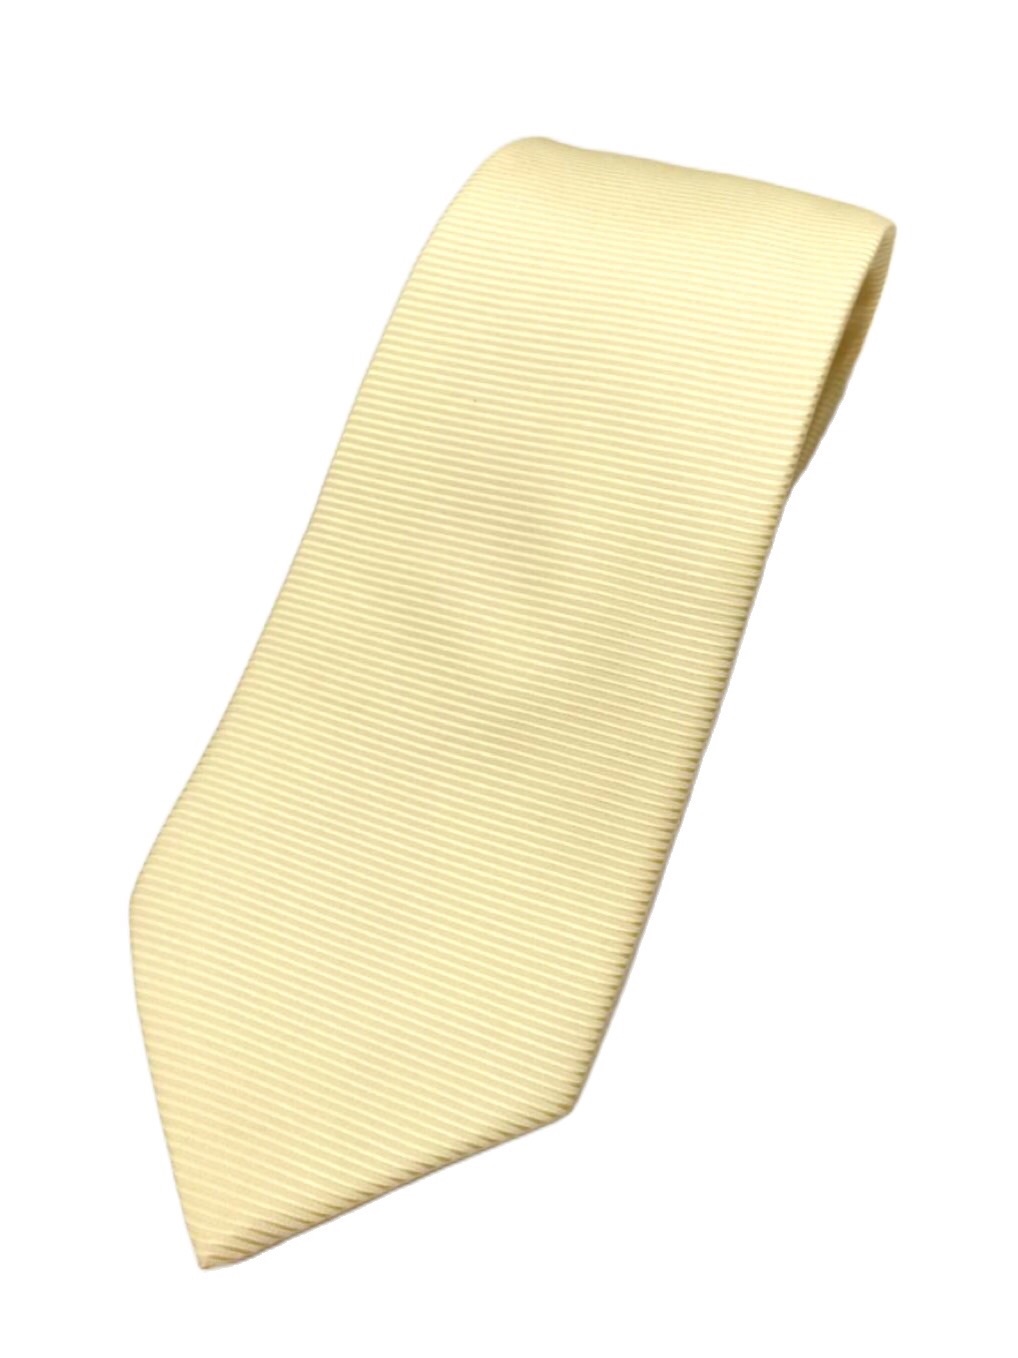 เนคไทผ้าไหมสีเหลืองนวลลายในตัวยี่ห้อ Quality ขนาดมาตรฐาน 10 X 150 cm ( 4นิ้ว )